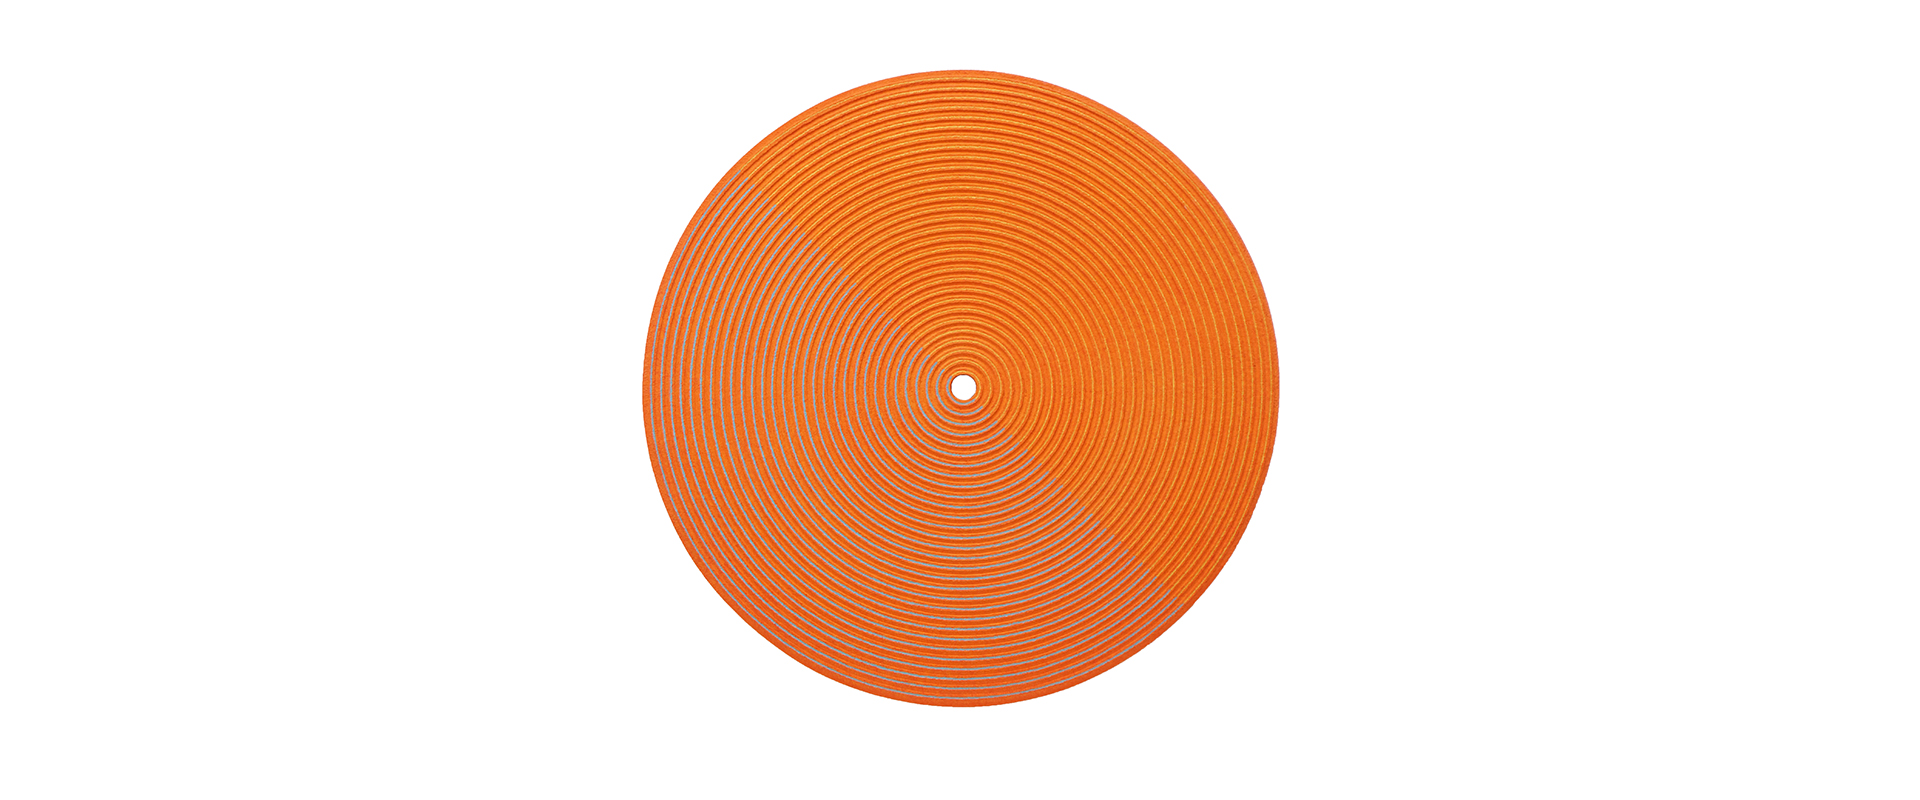 Struktur radial – 2020, shady orange, gelb, blau, Papiermaché, eingefärbt, D. 101 x 11,5 cm